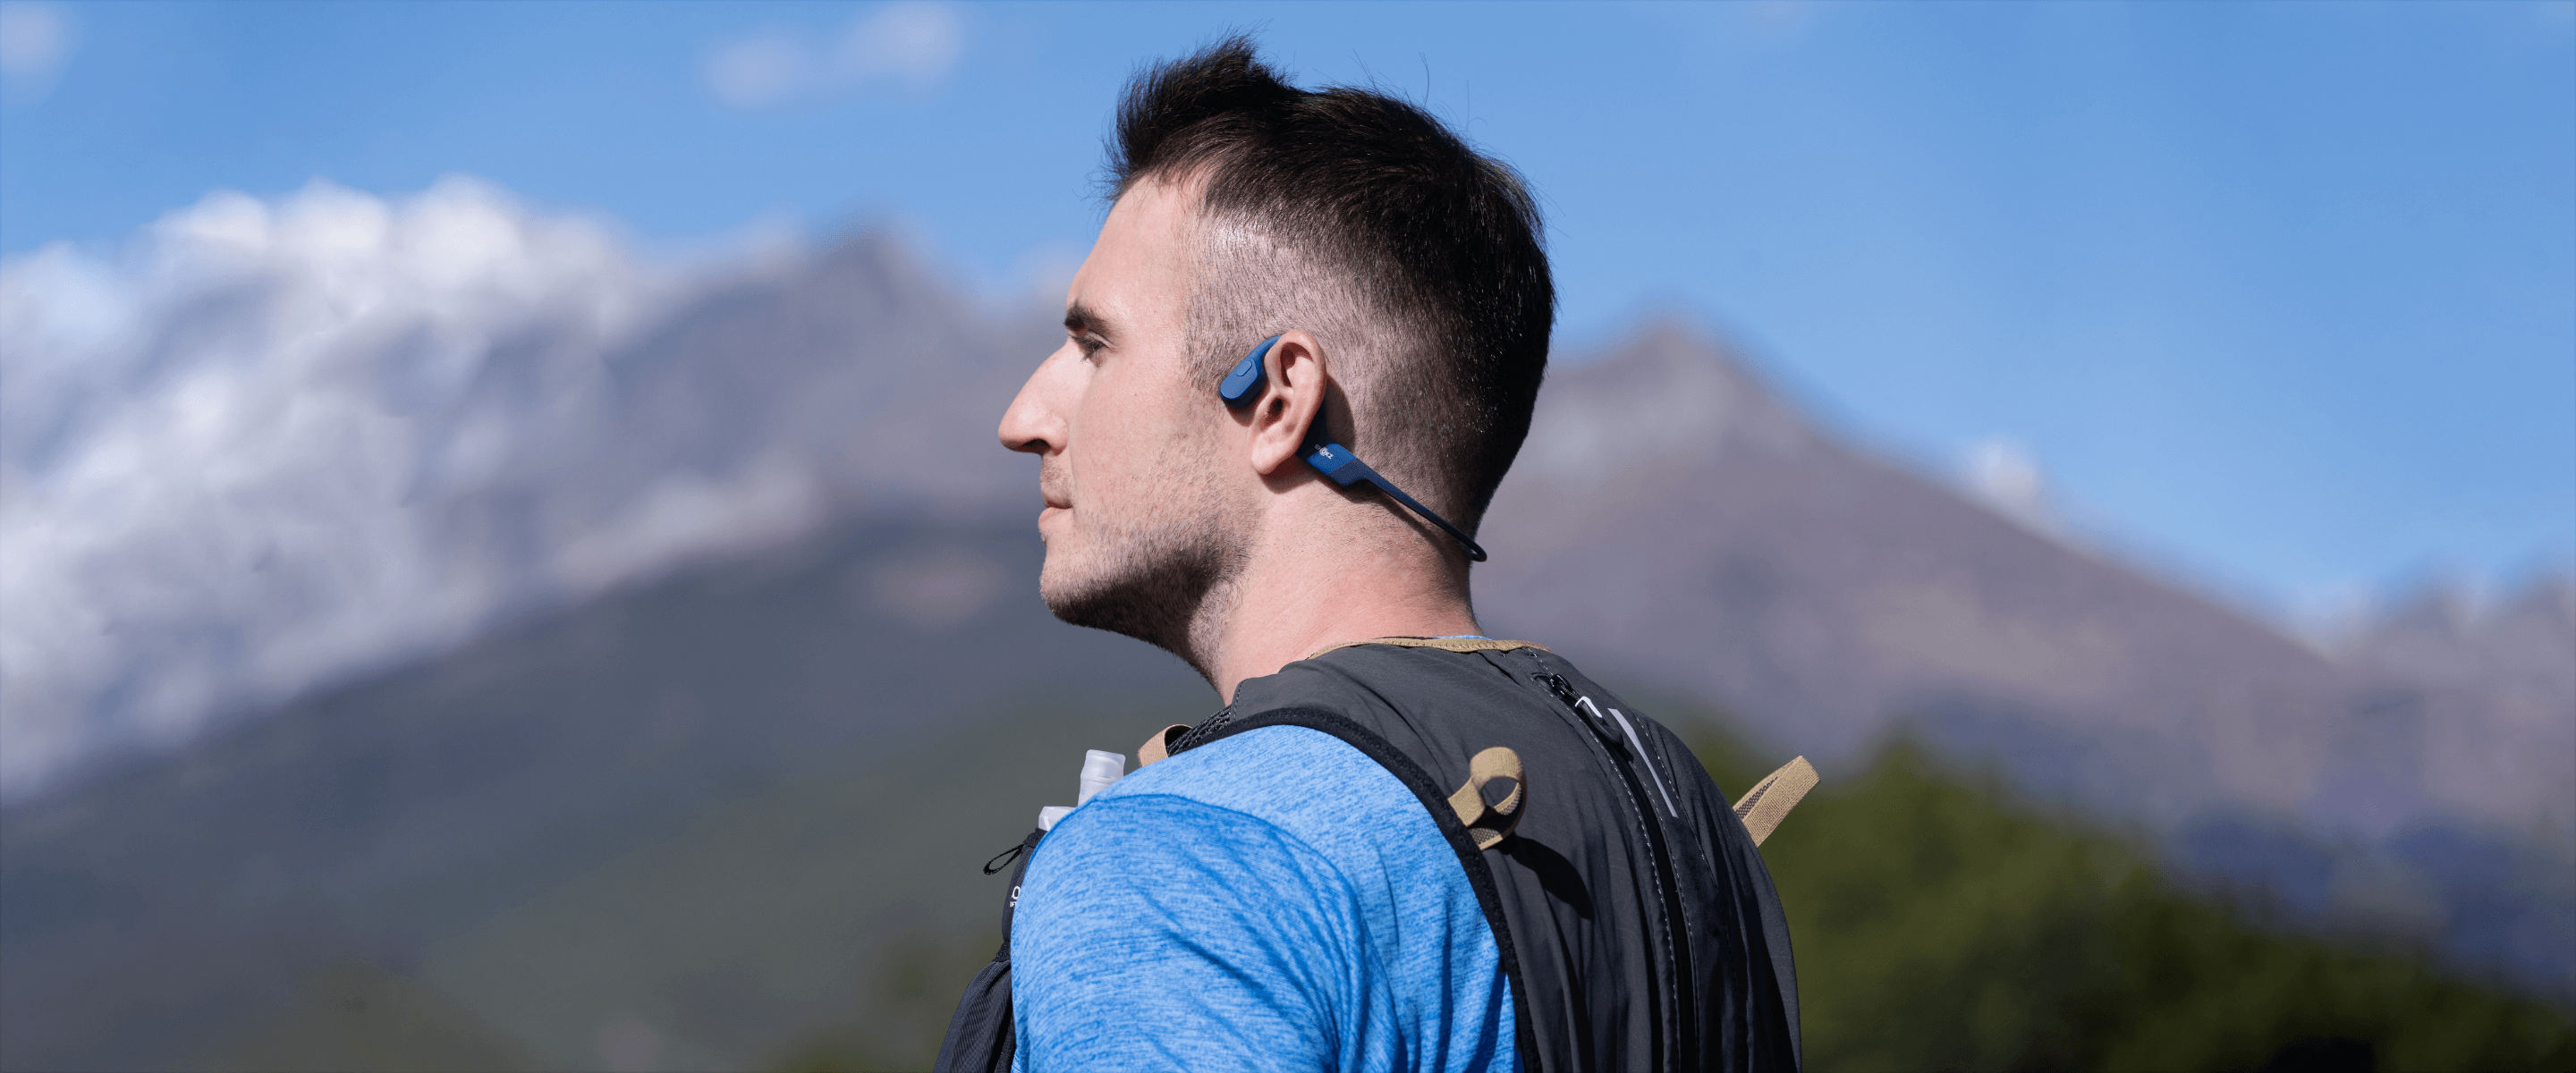 Why Choose Shokz's Open-Ear Headphones?